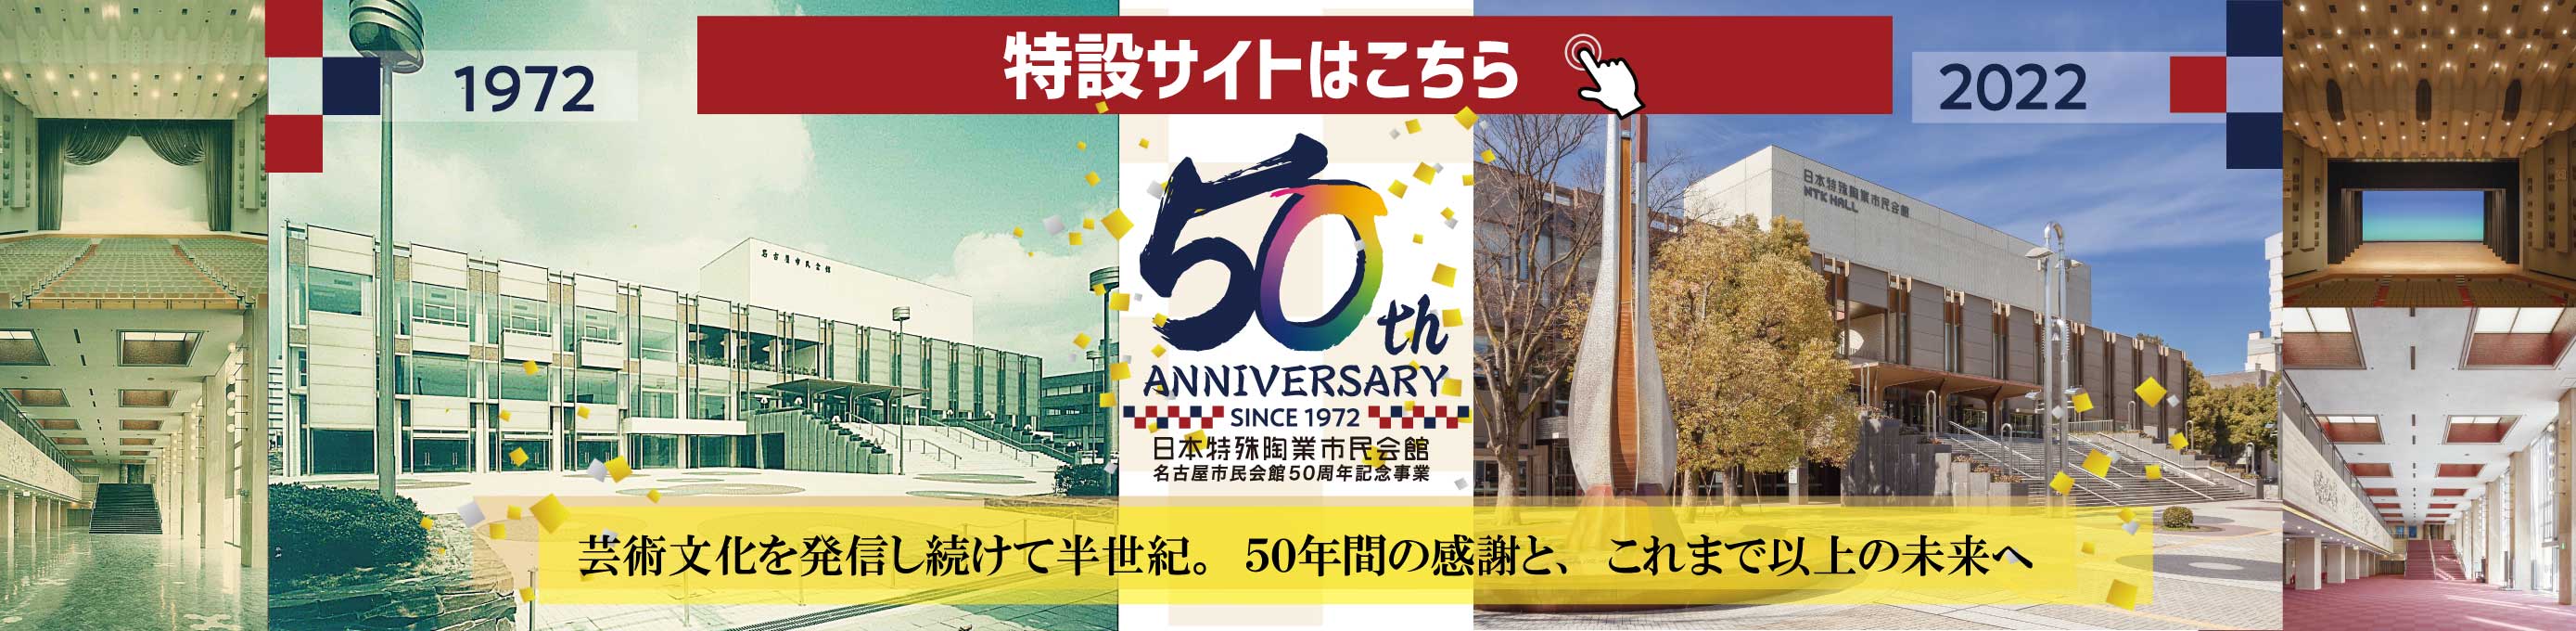 市民会館50周年記念サイト リンクバナー